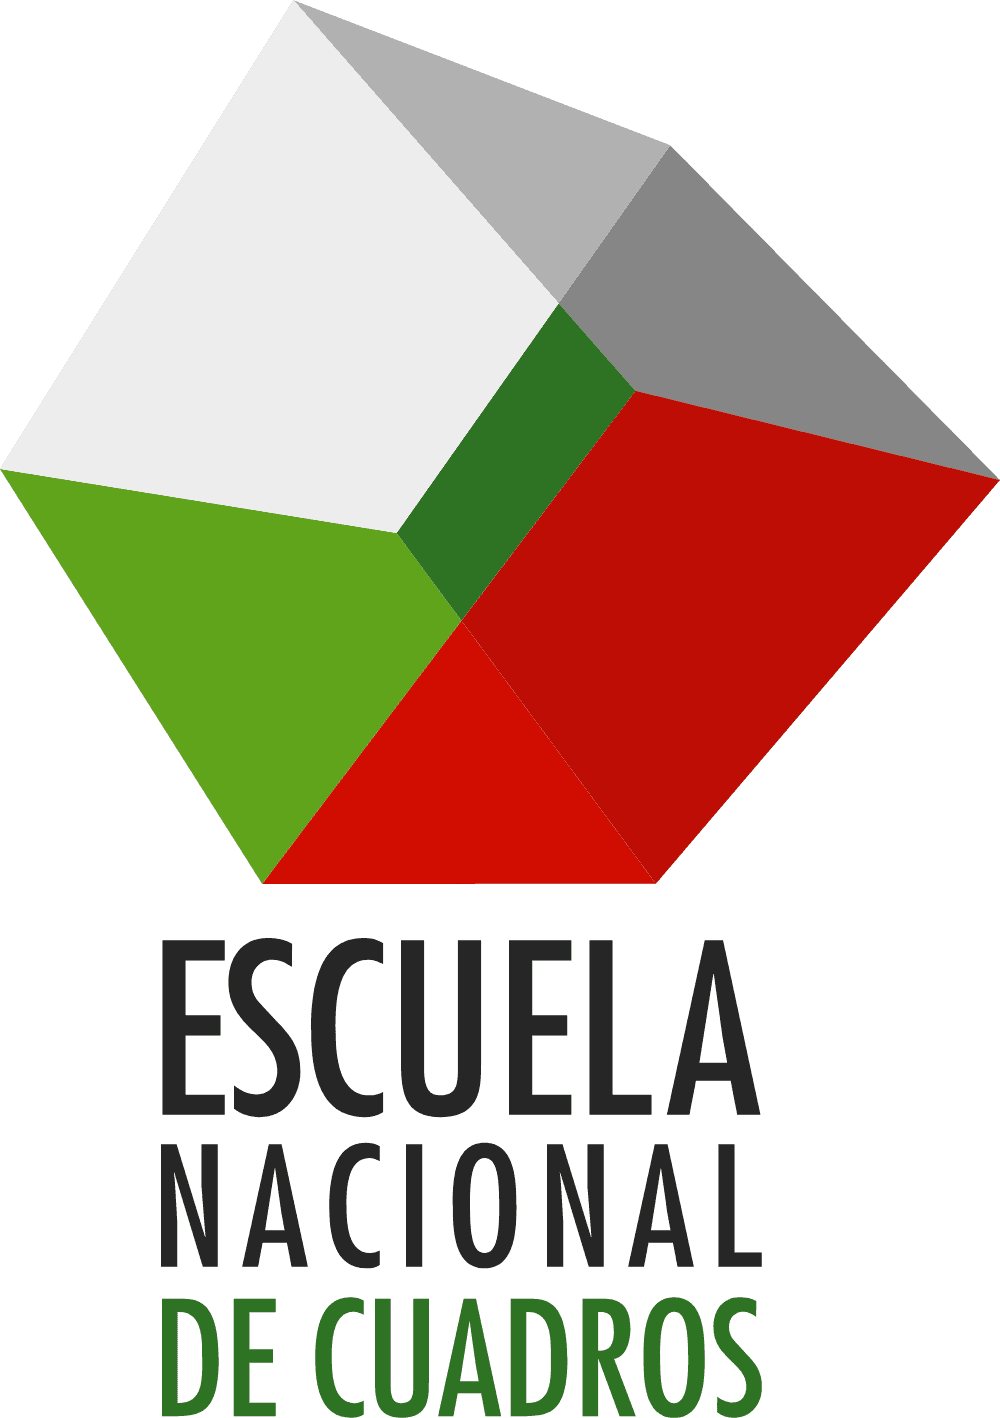 Escuela Nacional de Cuadros Logo download